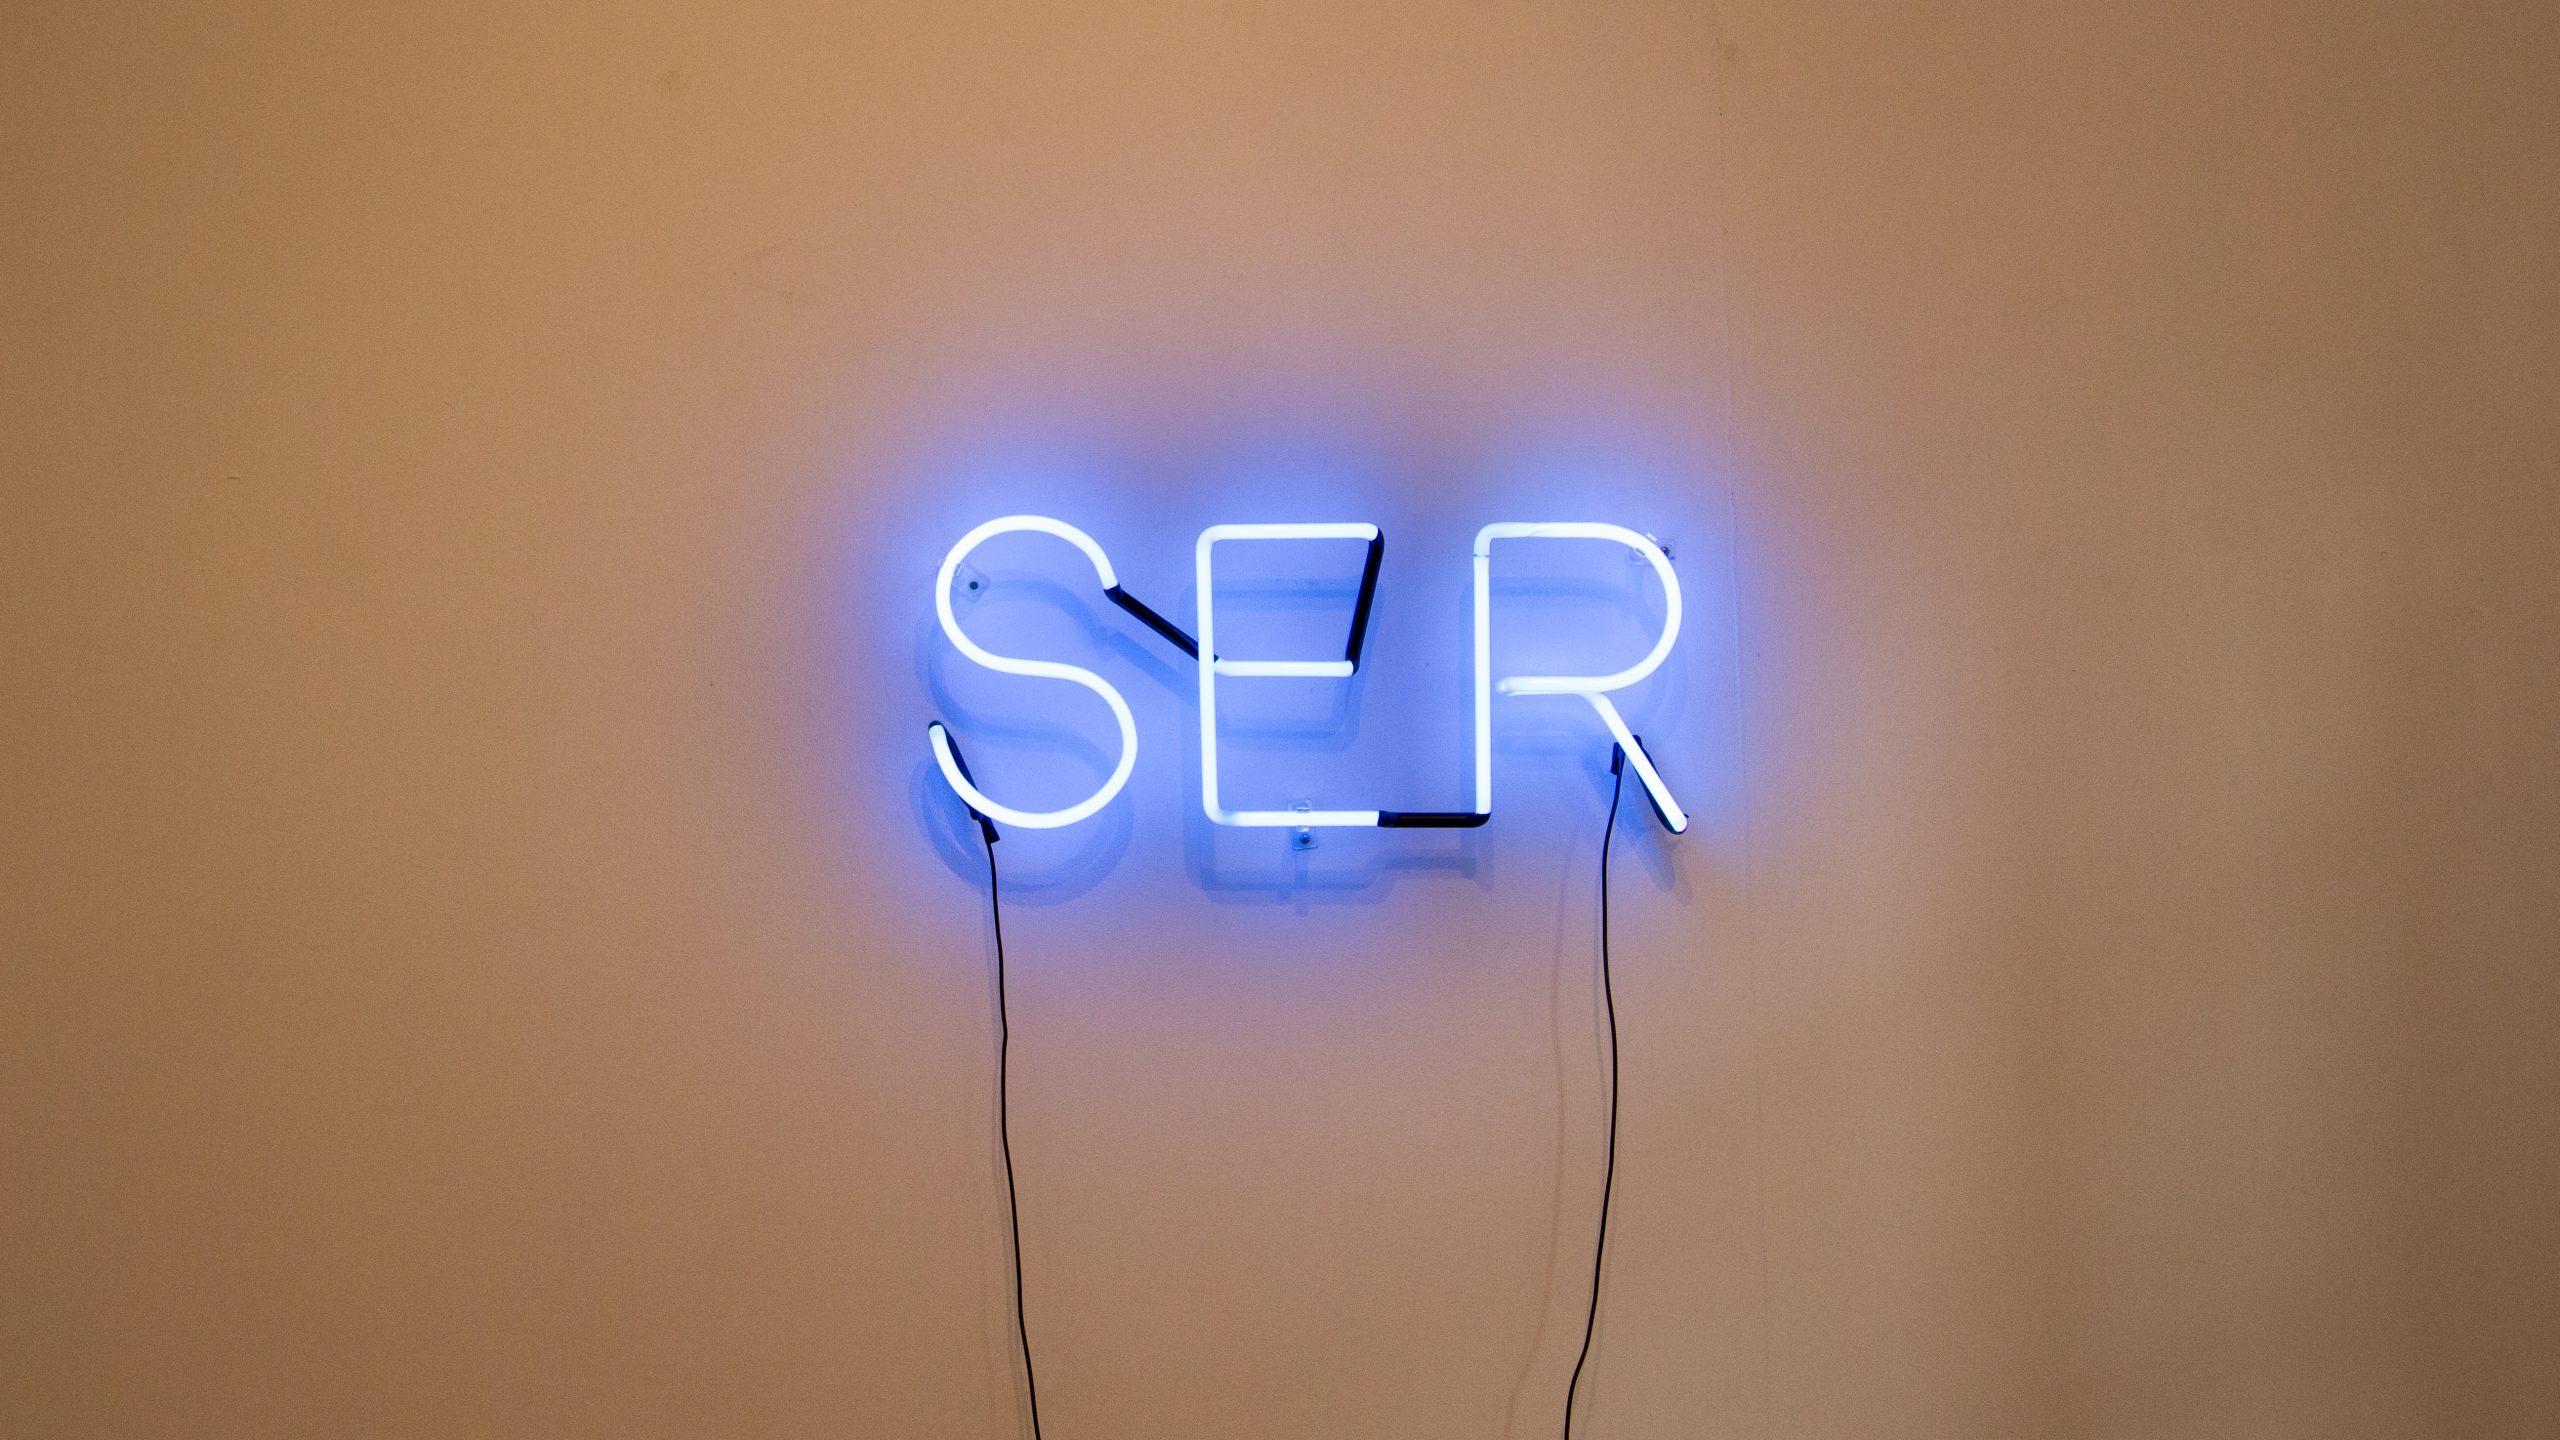 Ser, série E-n-f-r-e-n-t-a-m-e-n-t-o, 2019. Objeto em luz neon, 100x50cm.